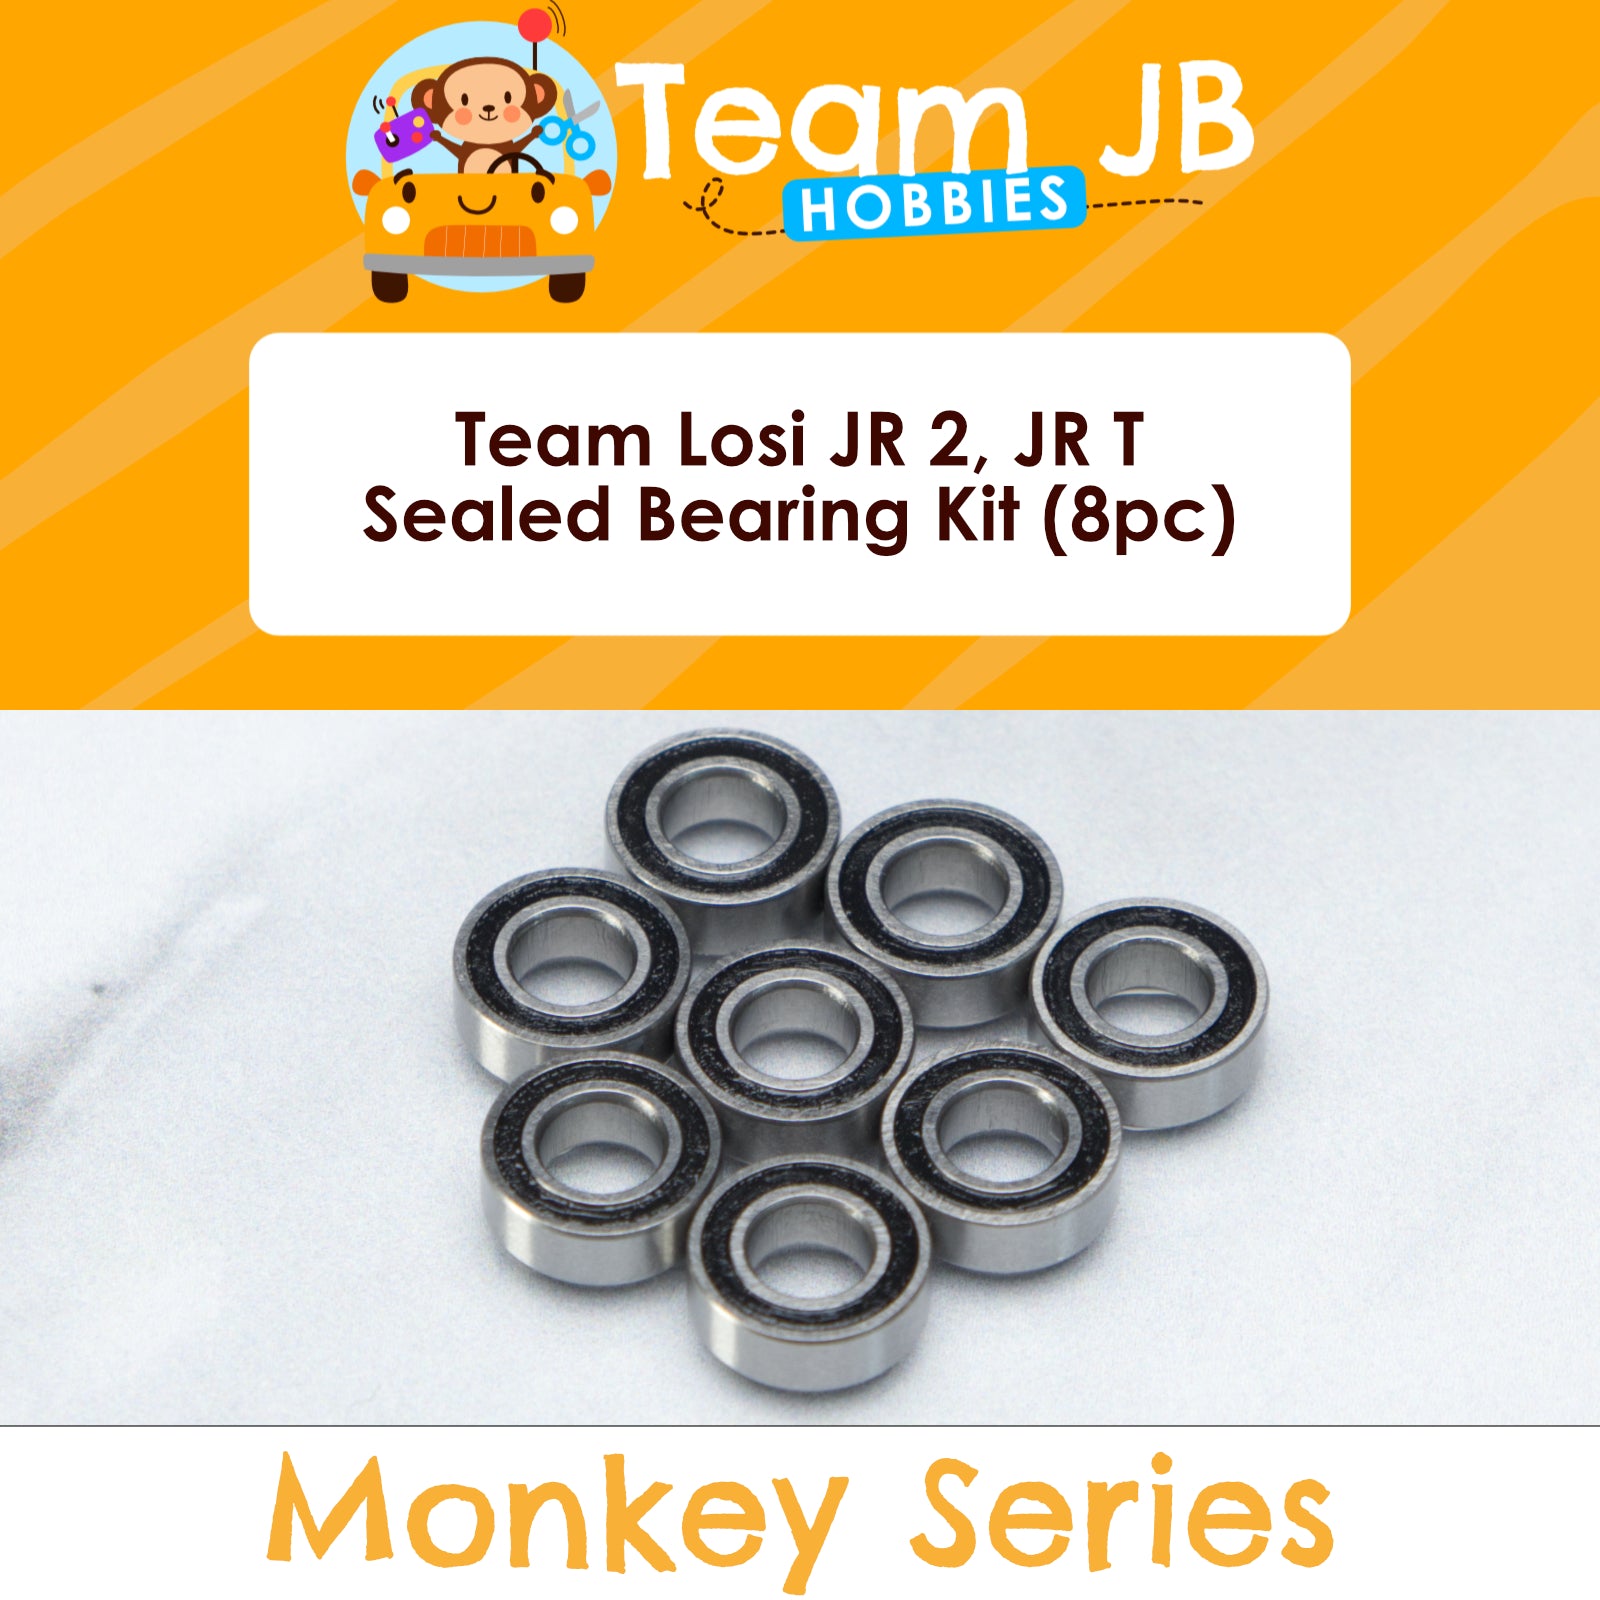 Team Losi JR 2, JR T - Sealed Bearing Kit